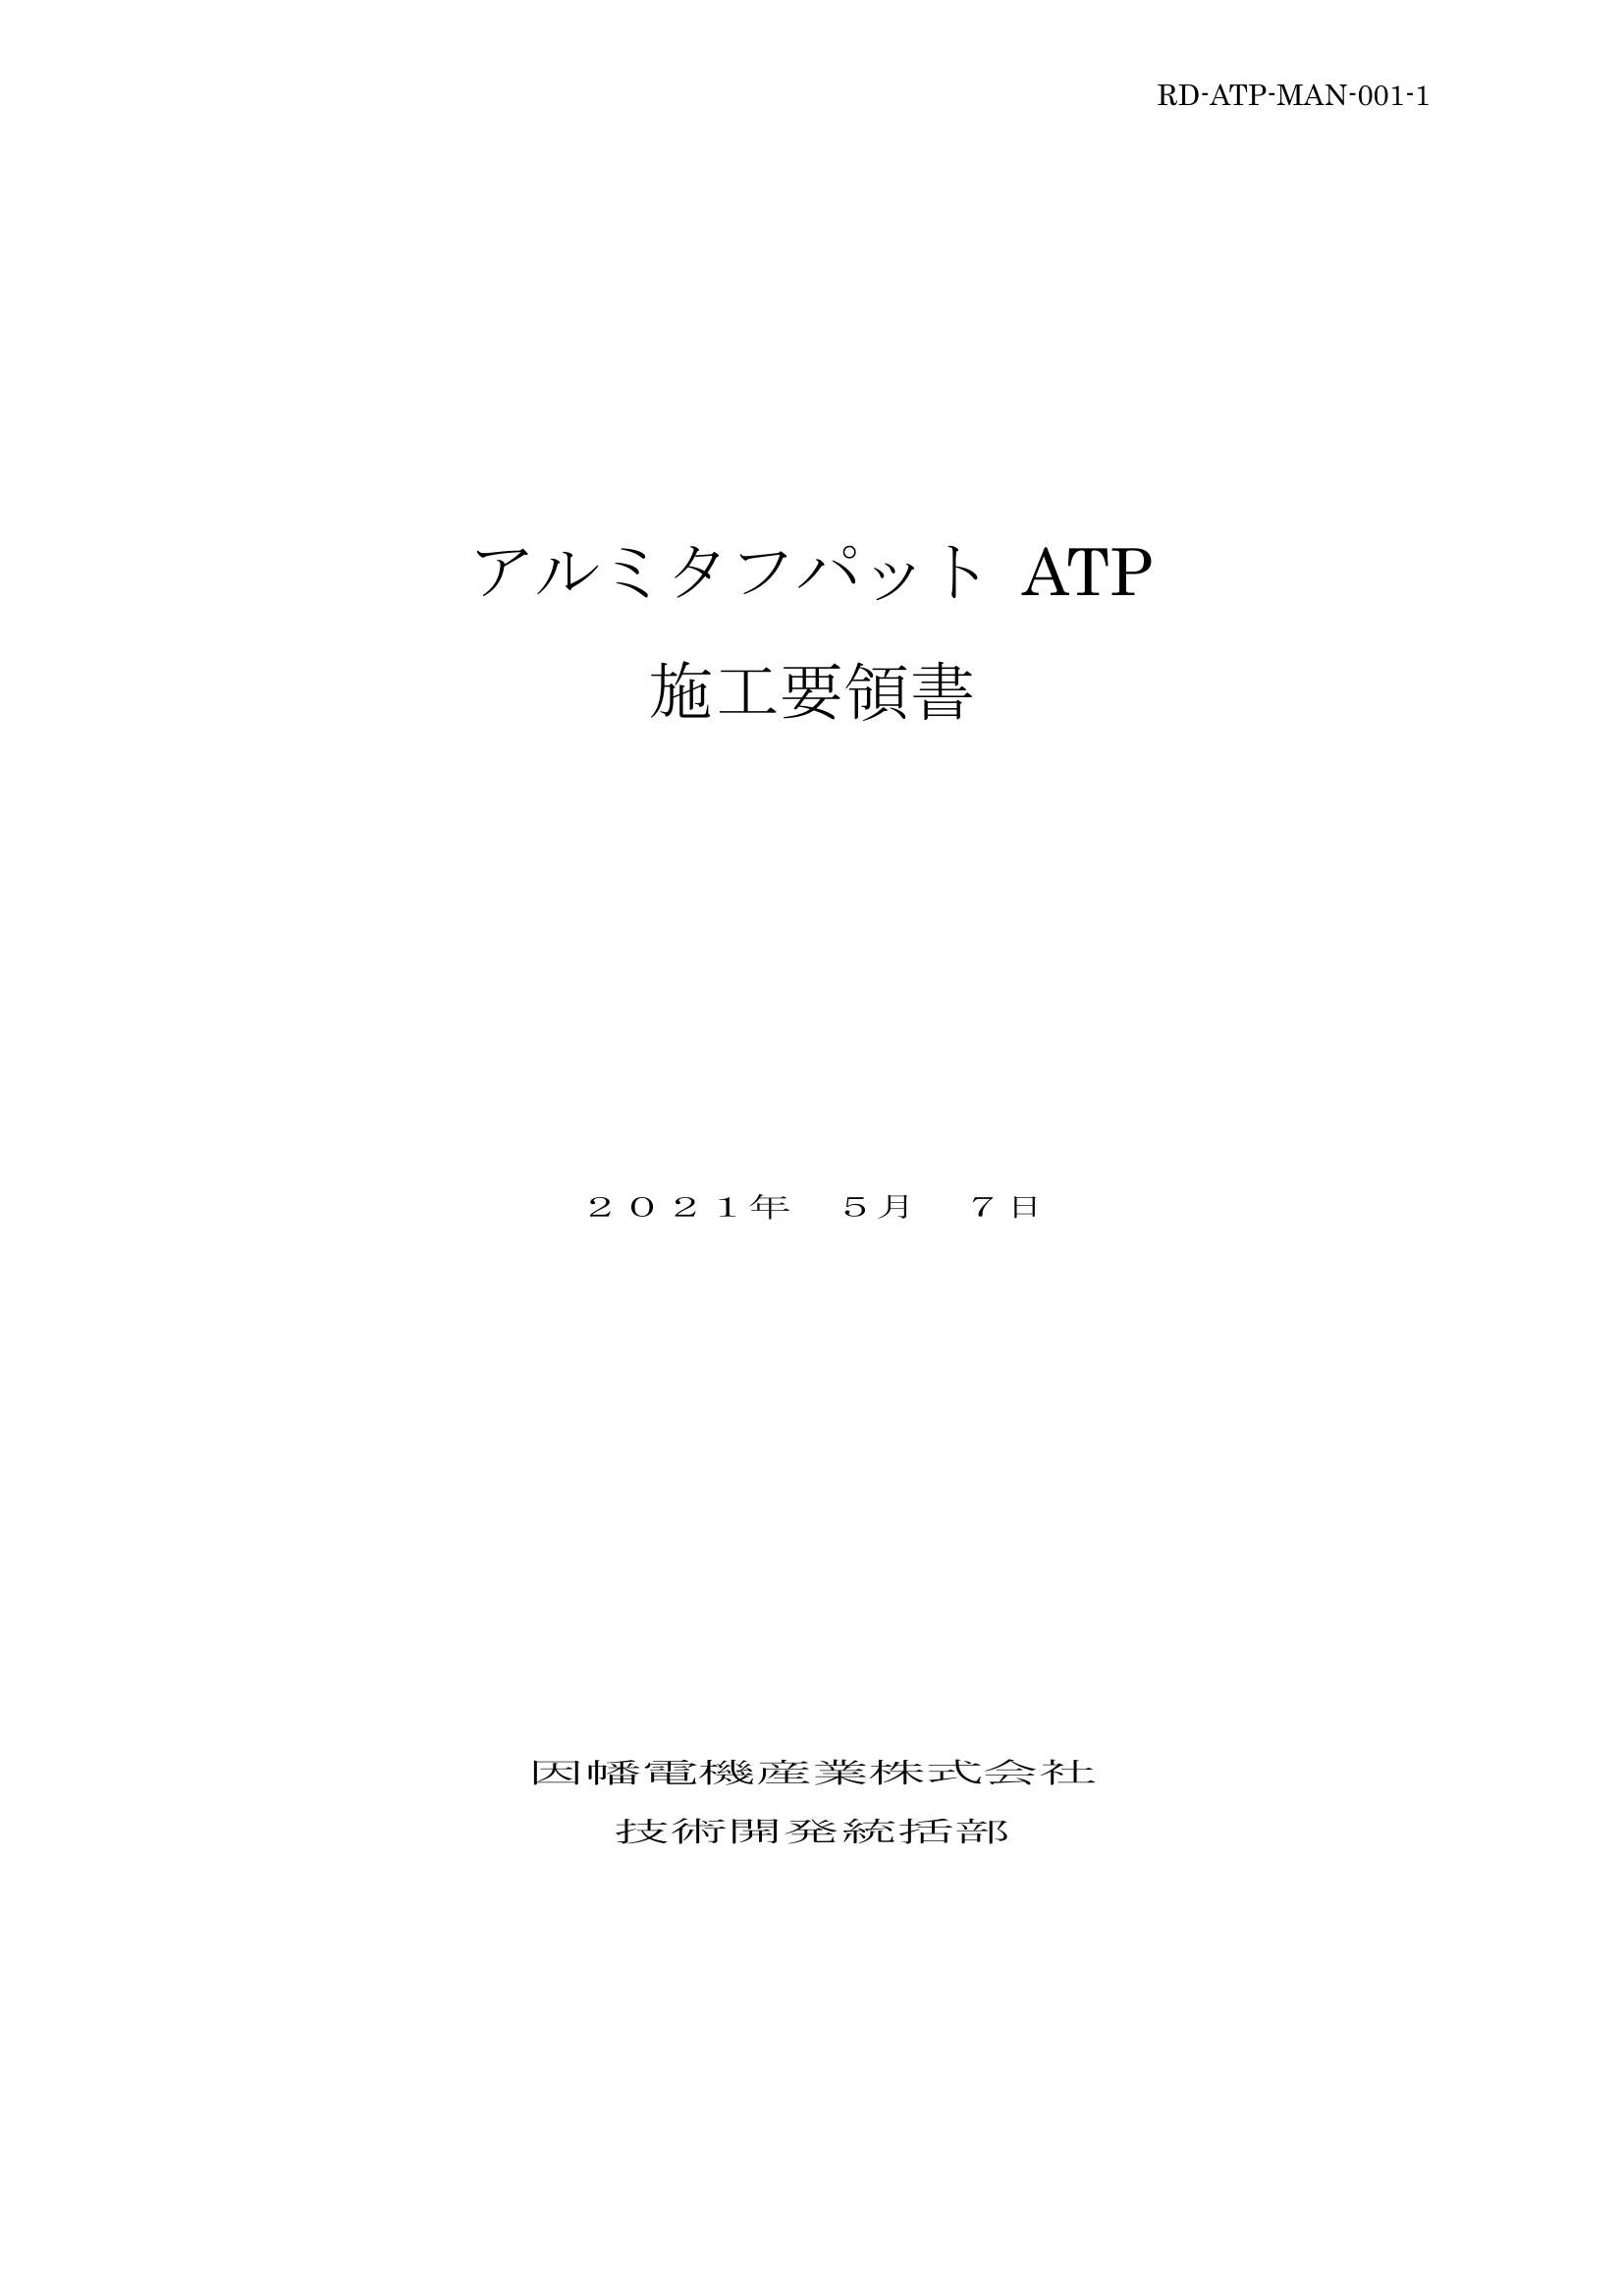 ATP_施工要領書_20210507.pdf